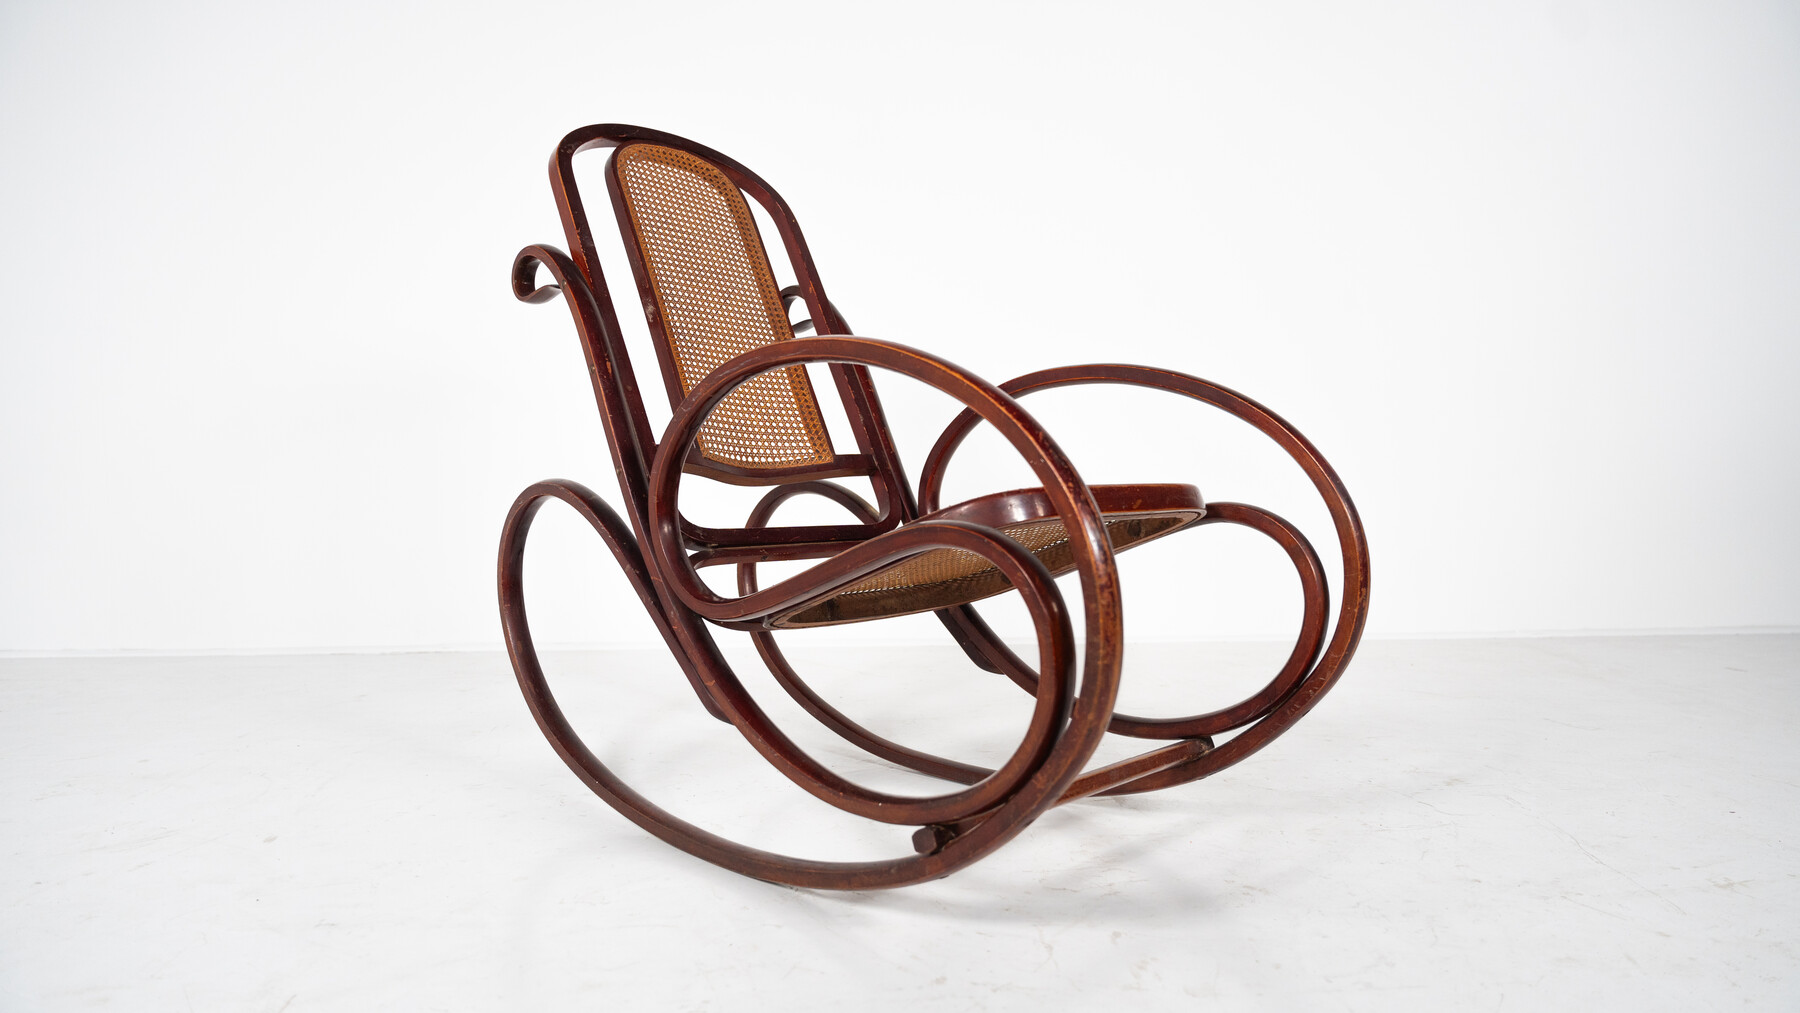 Rocking Chair by Michaël Thonet, 1900s